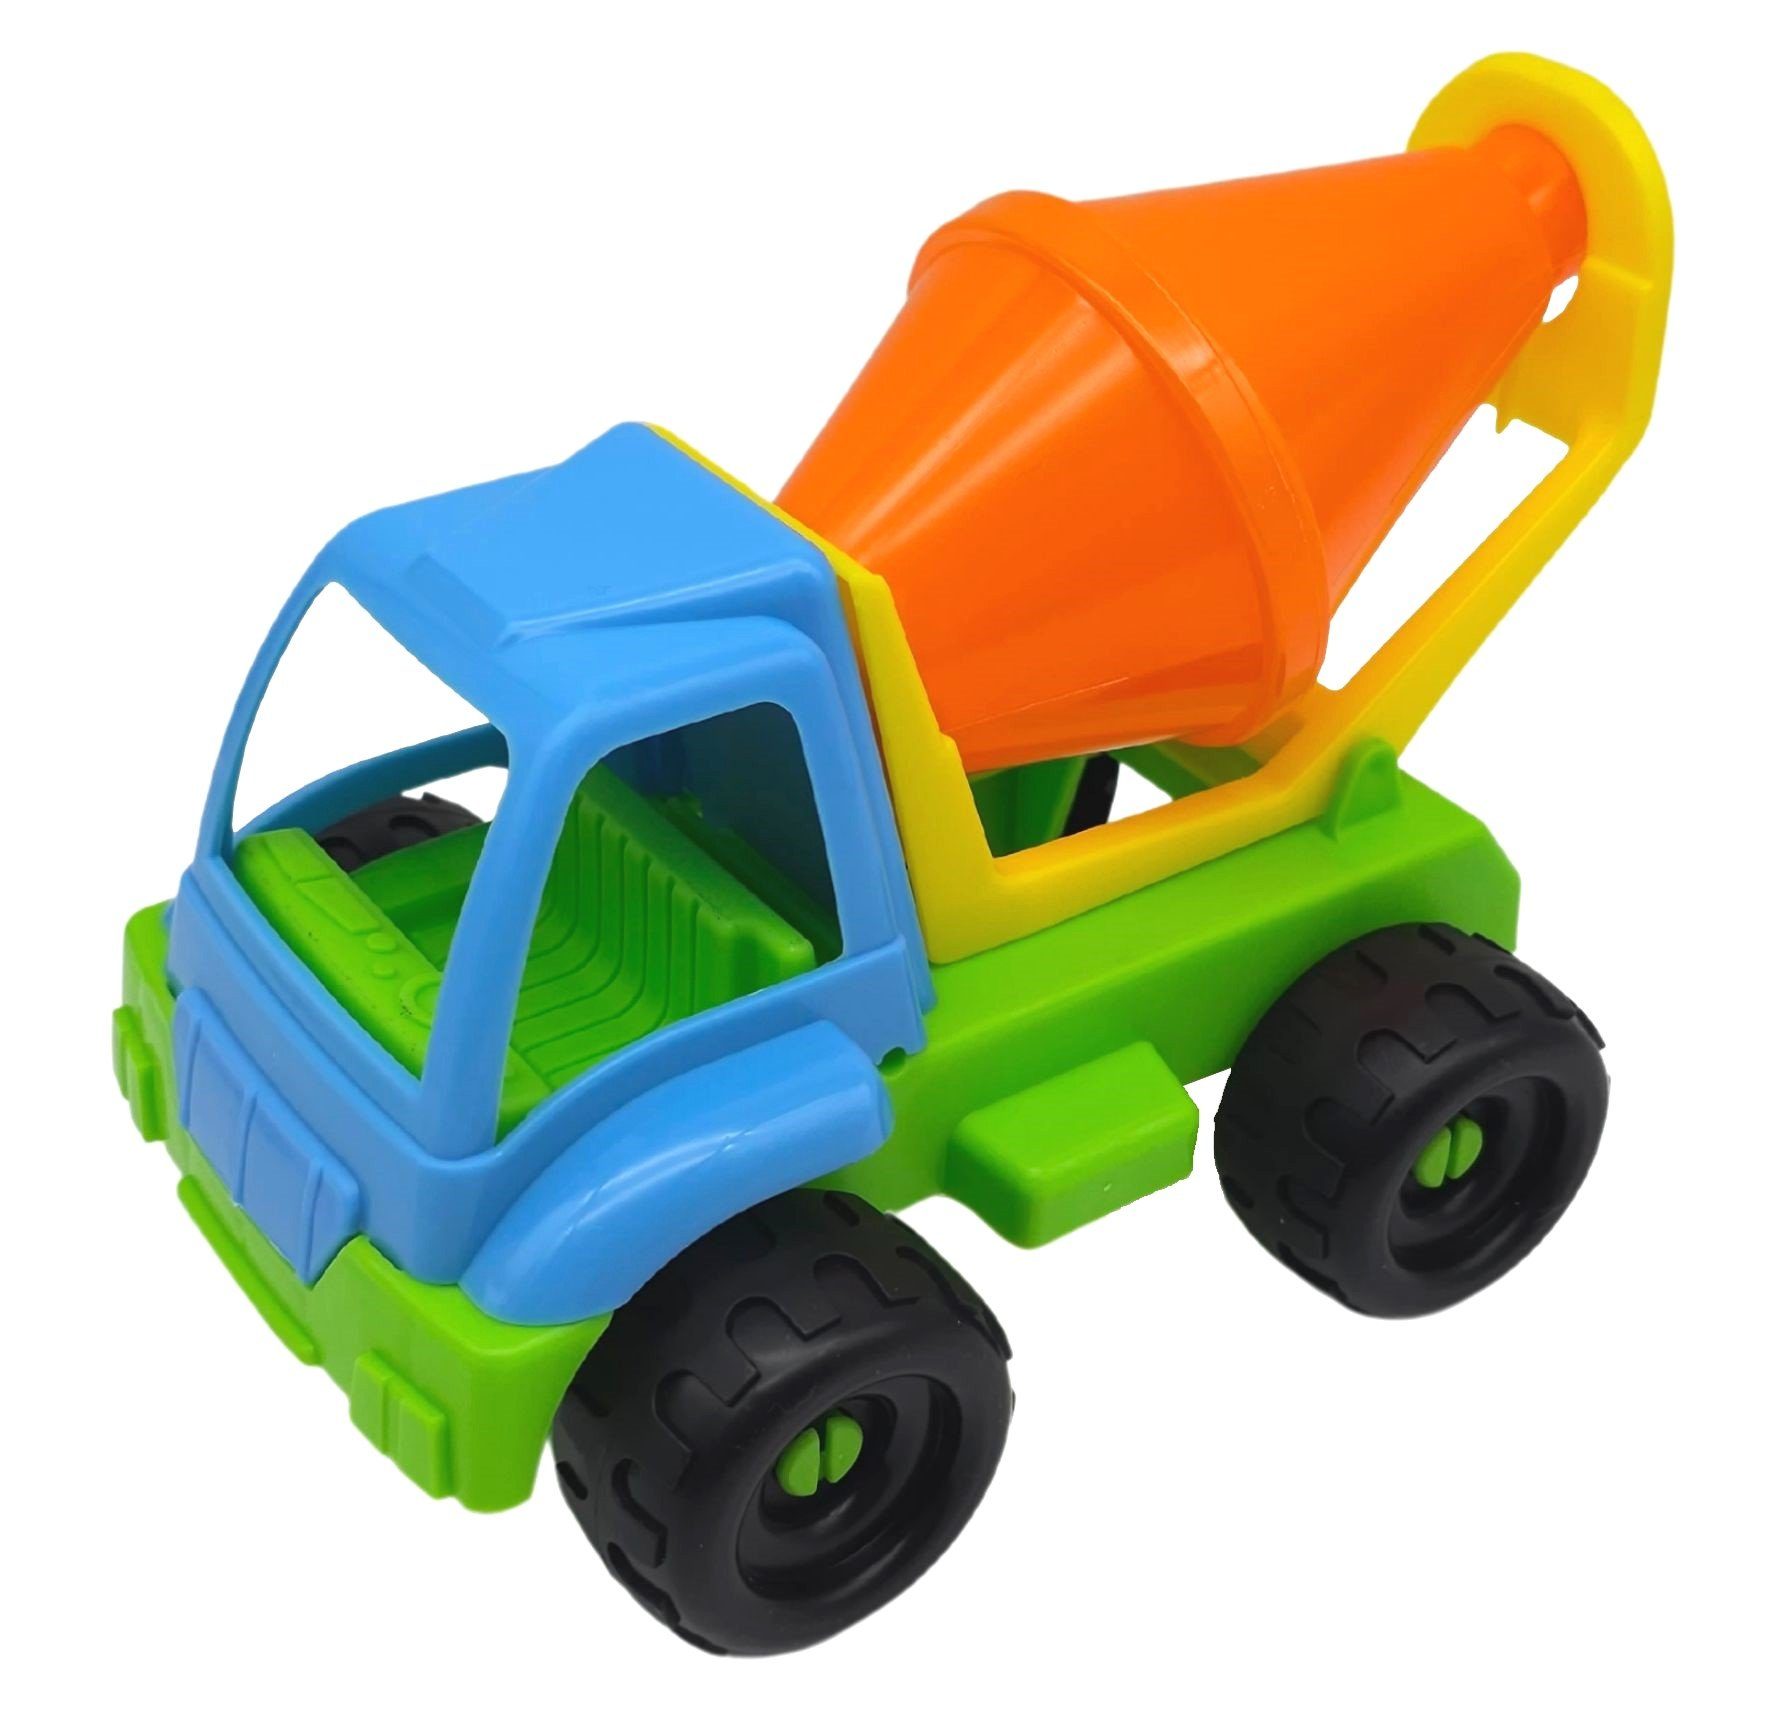 alldoro Spielzeug-Betonmischer 60048, Spielfahrzeug für Kinder, 21 cm, Spielzeugauto indoor & outdoor